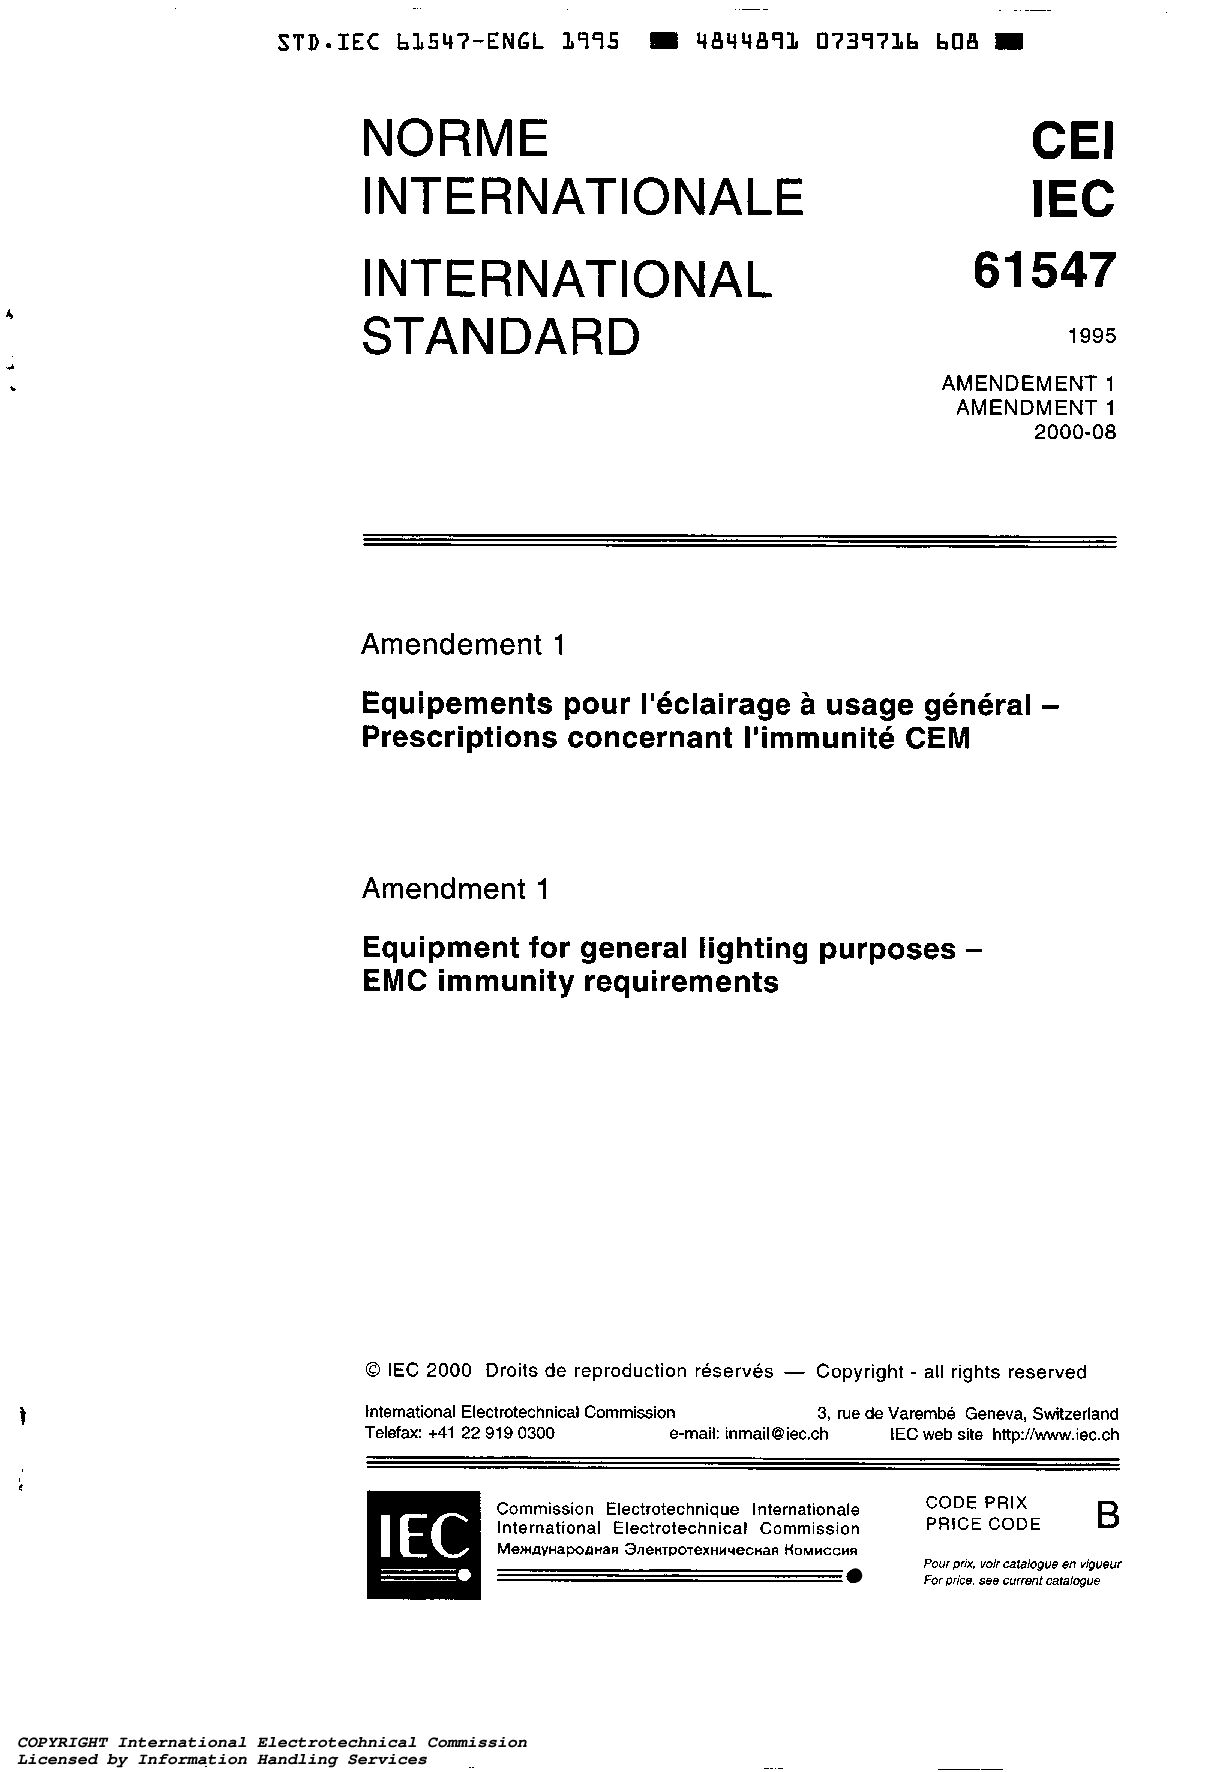 IEC 61547:1995